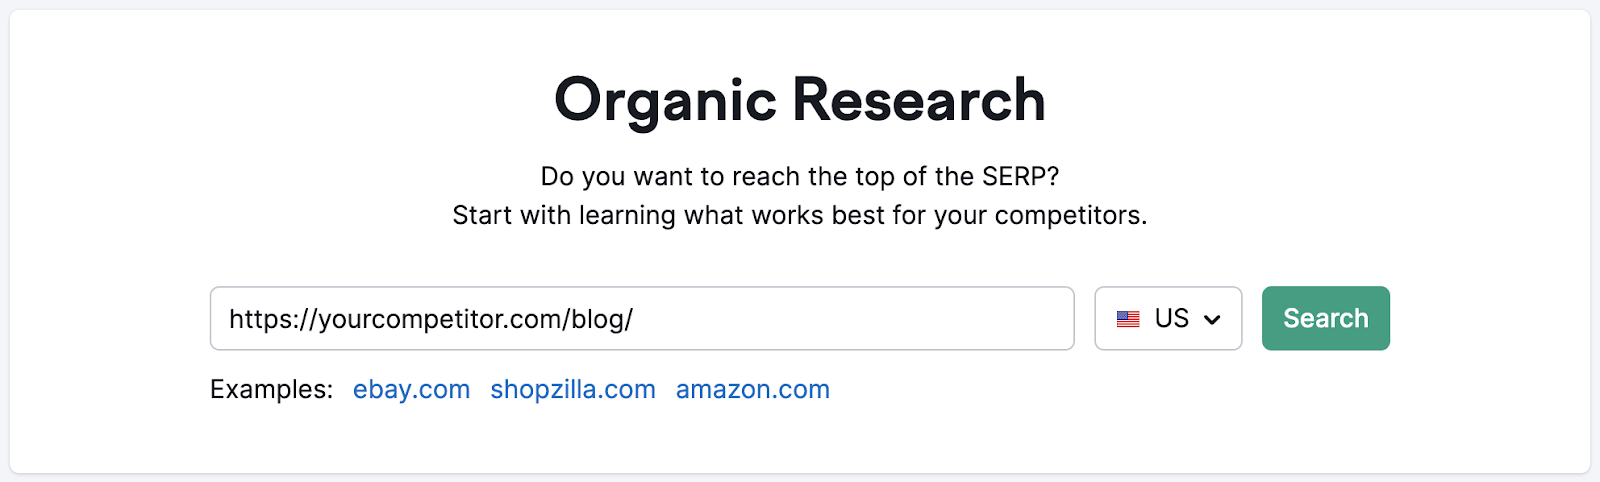 Organic Research tool